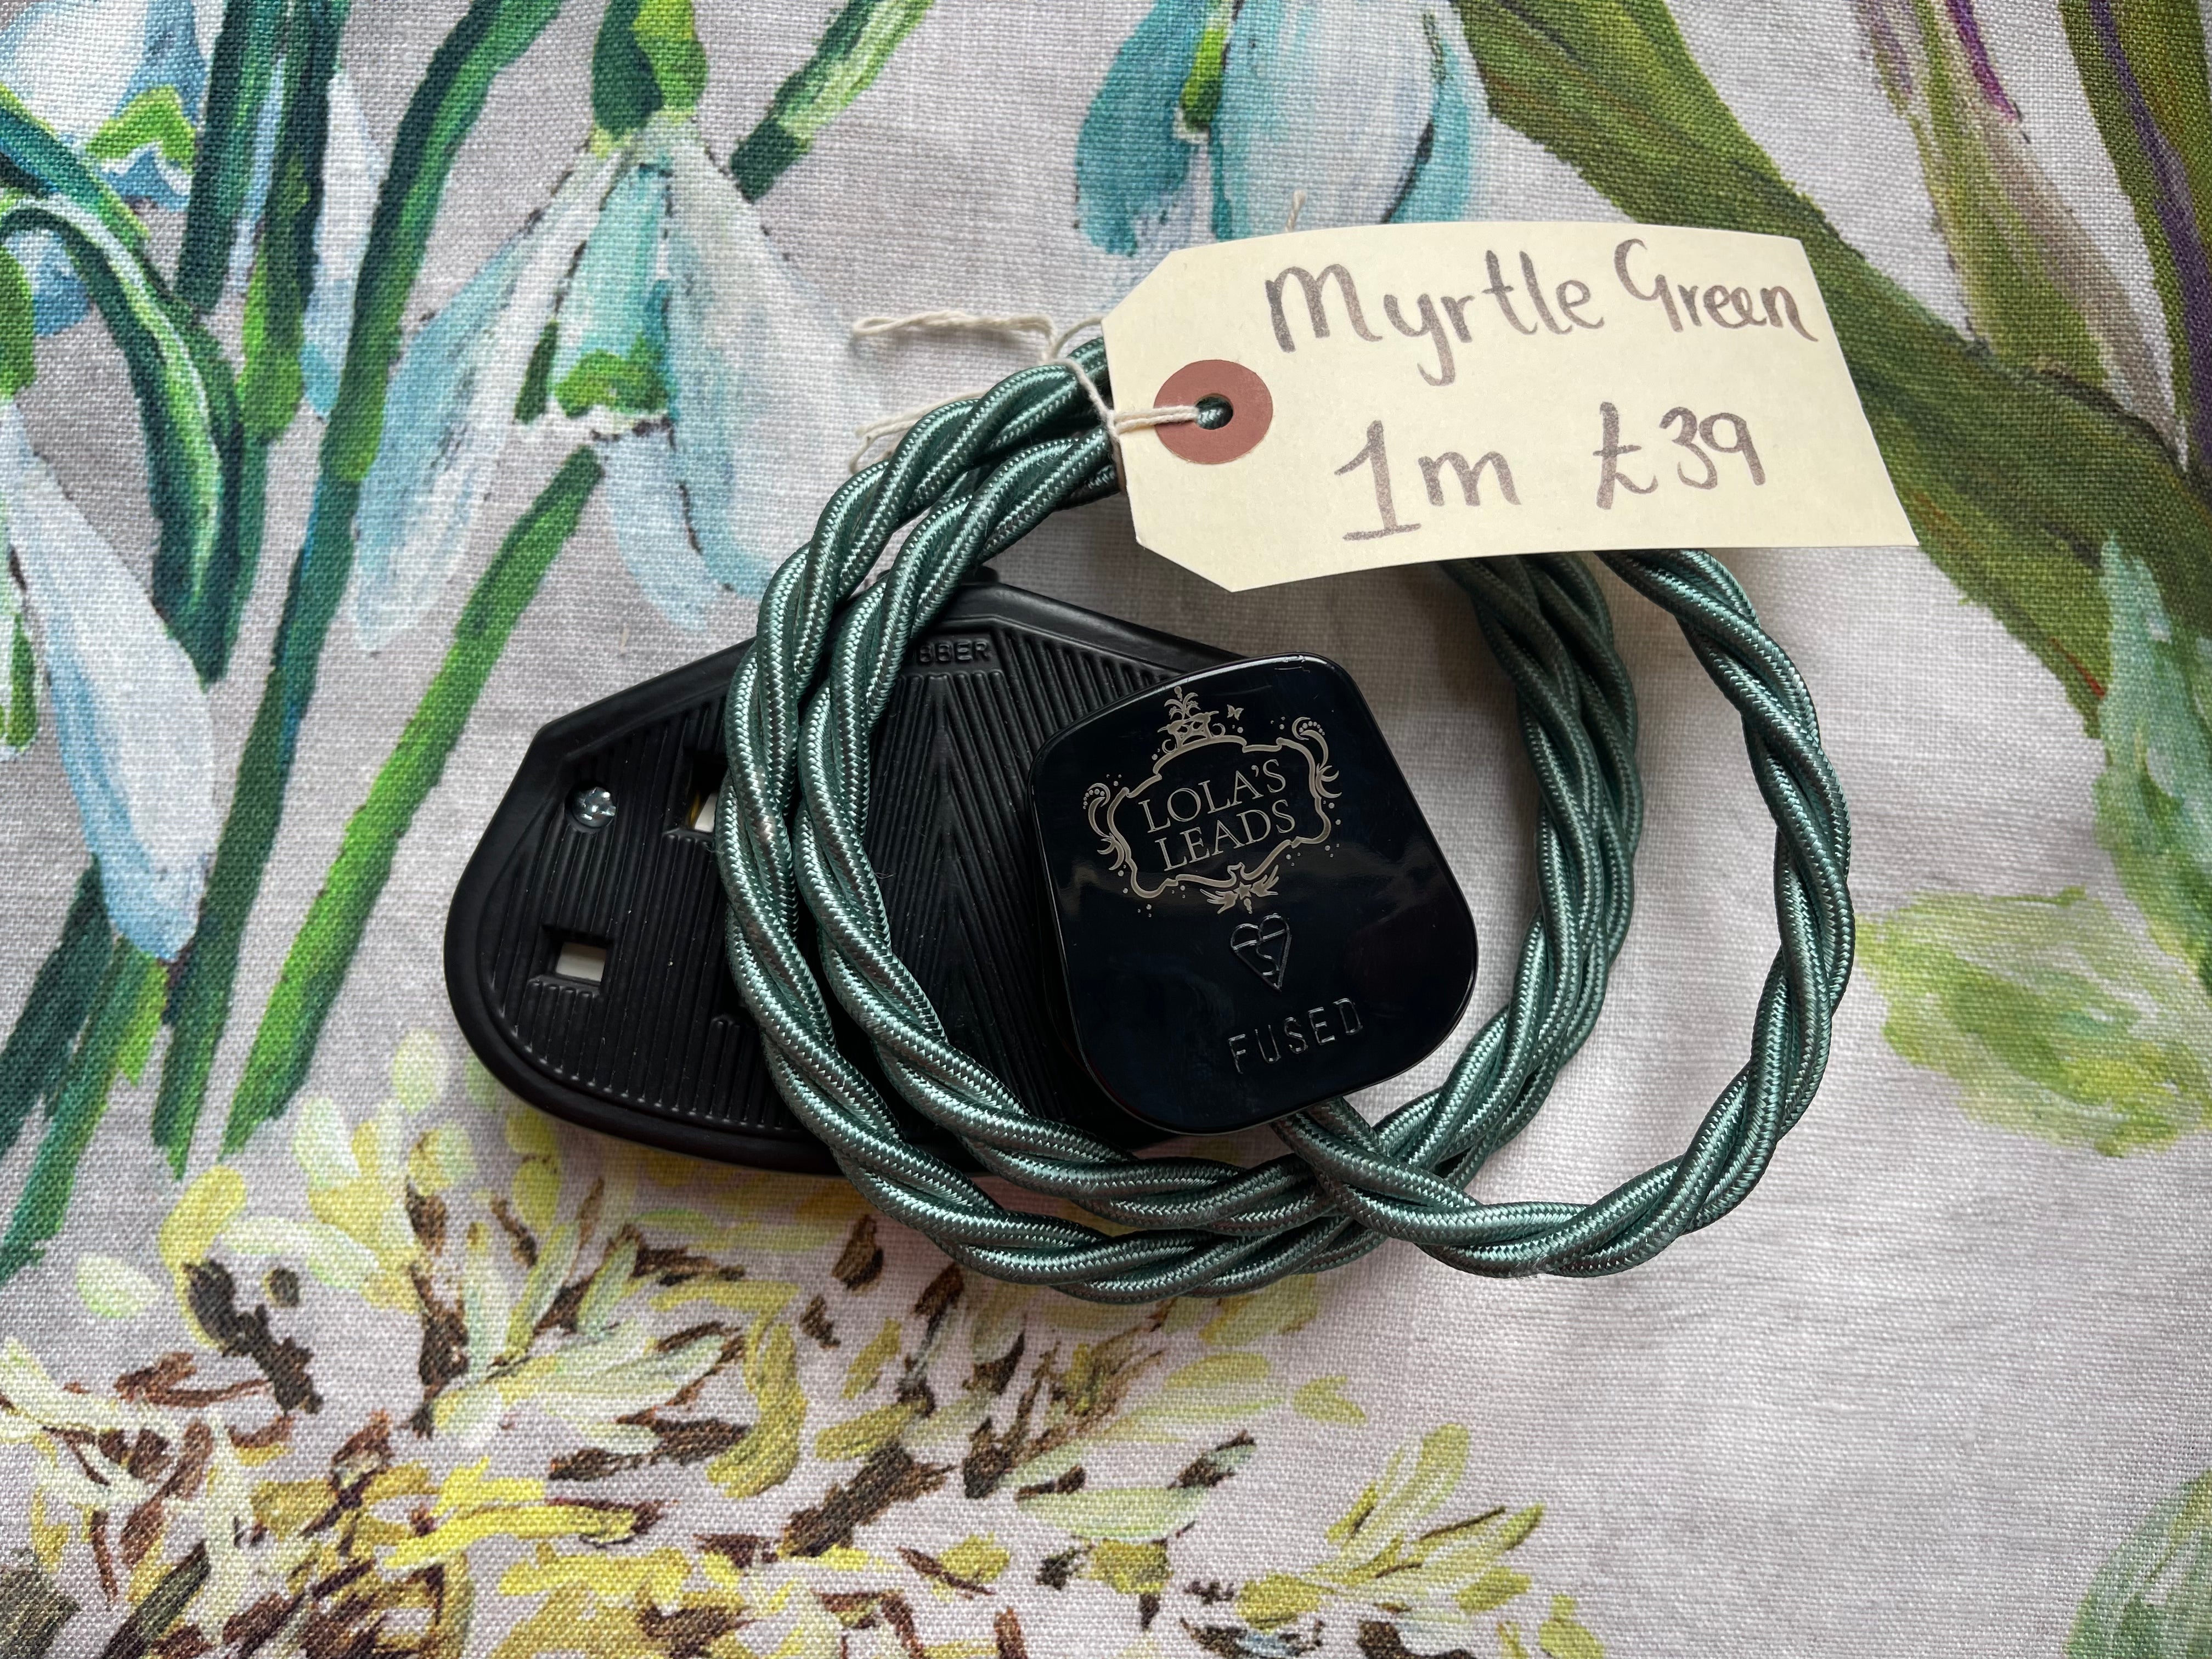 Myrtle Green + Black 1m | 2 Gang 